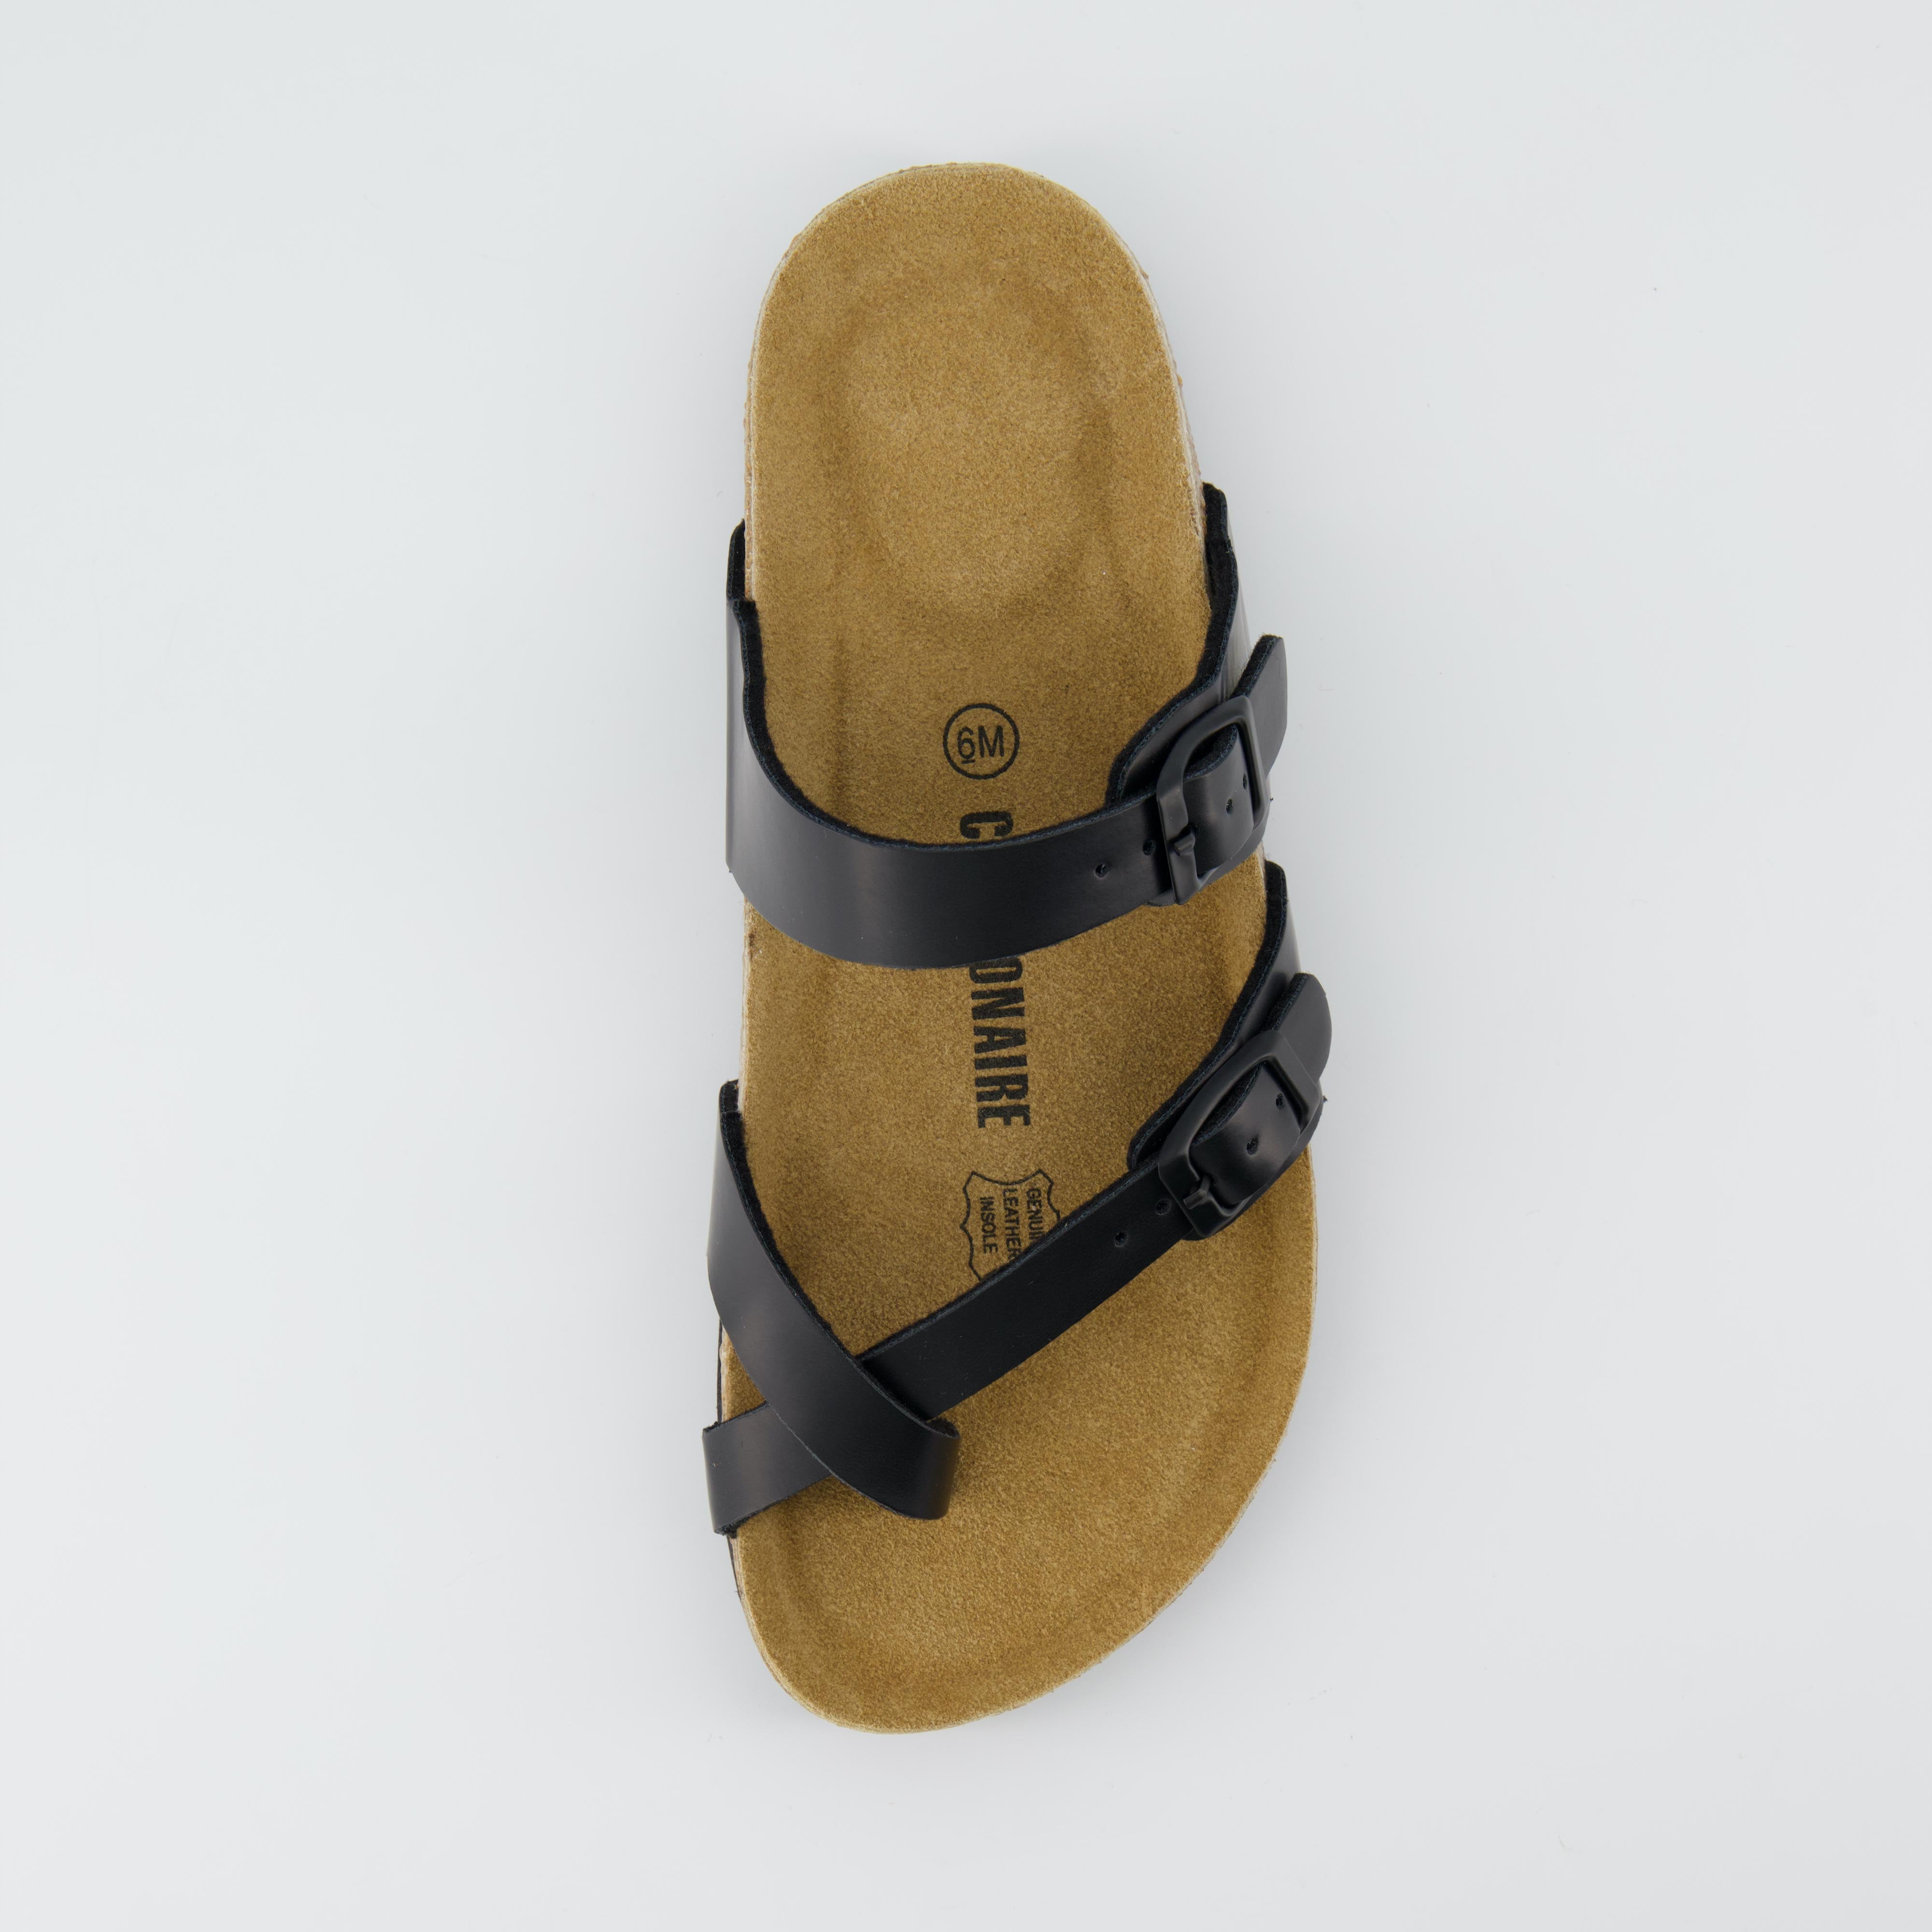 Luna Cork Footbed Thong Sandal Textured